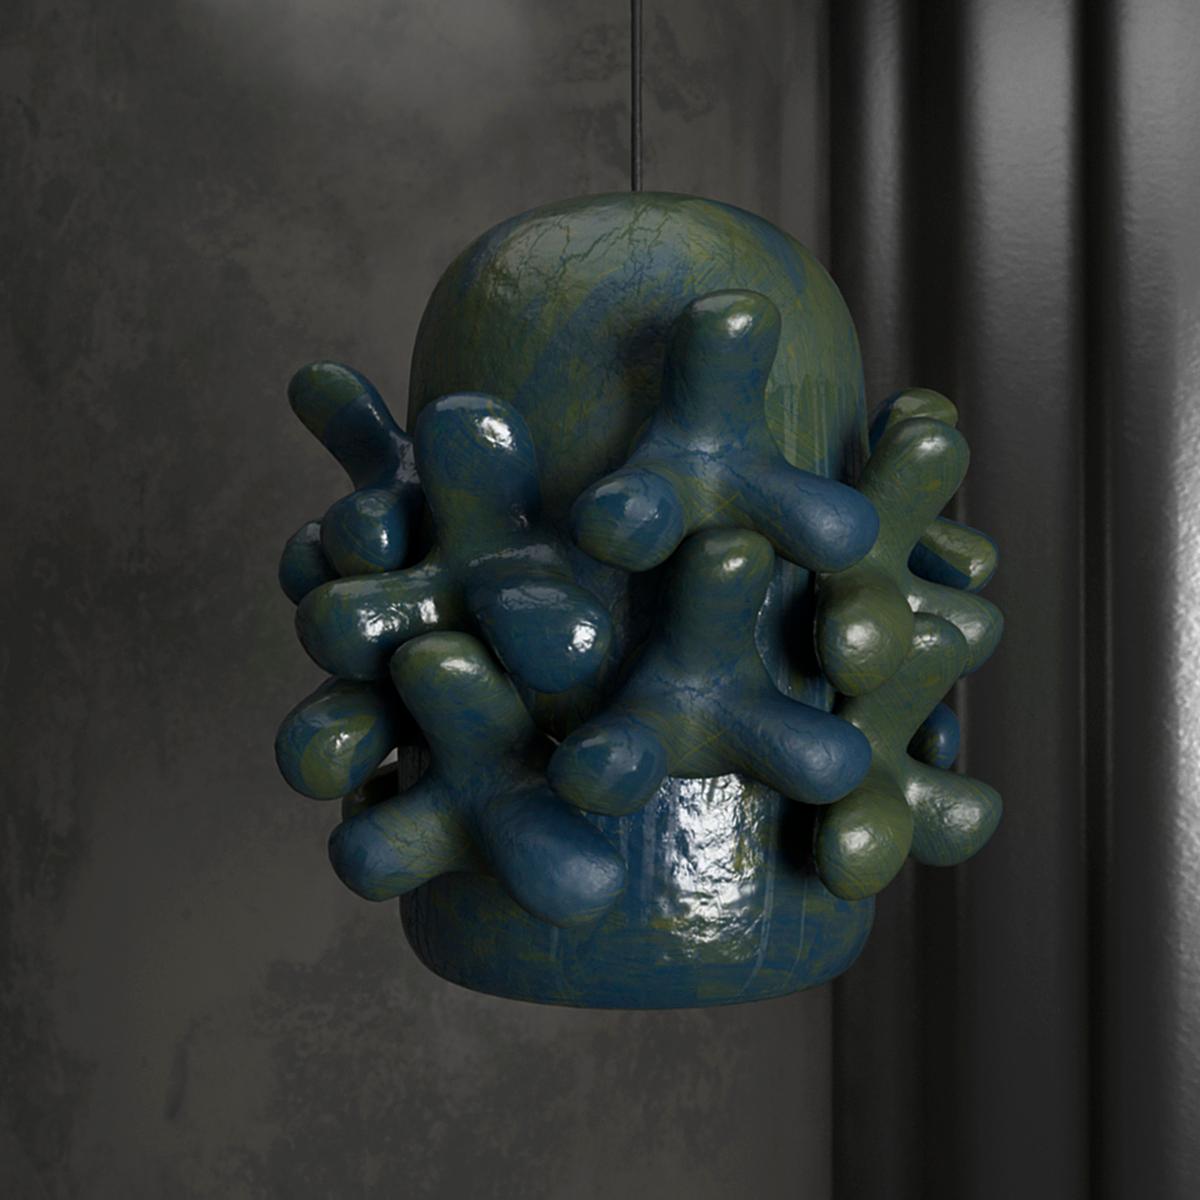 Lampe pendante Tetra en céramique de Makhno
Dimensions : D 58 x H 61 cm
Matériaux : Céramique

Toutes nos lampes peuvent être câblées en fonction de chaque pays. Si elle est vendue aux États-Unis, elle sera câblée pour les États-Unis, par